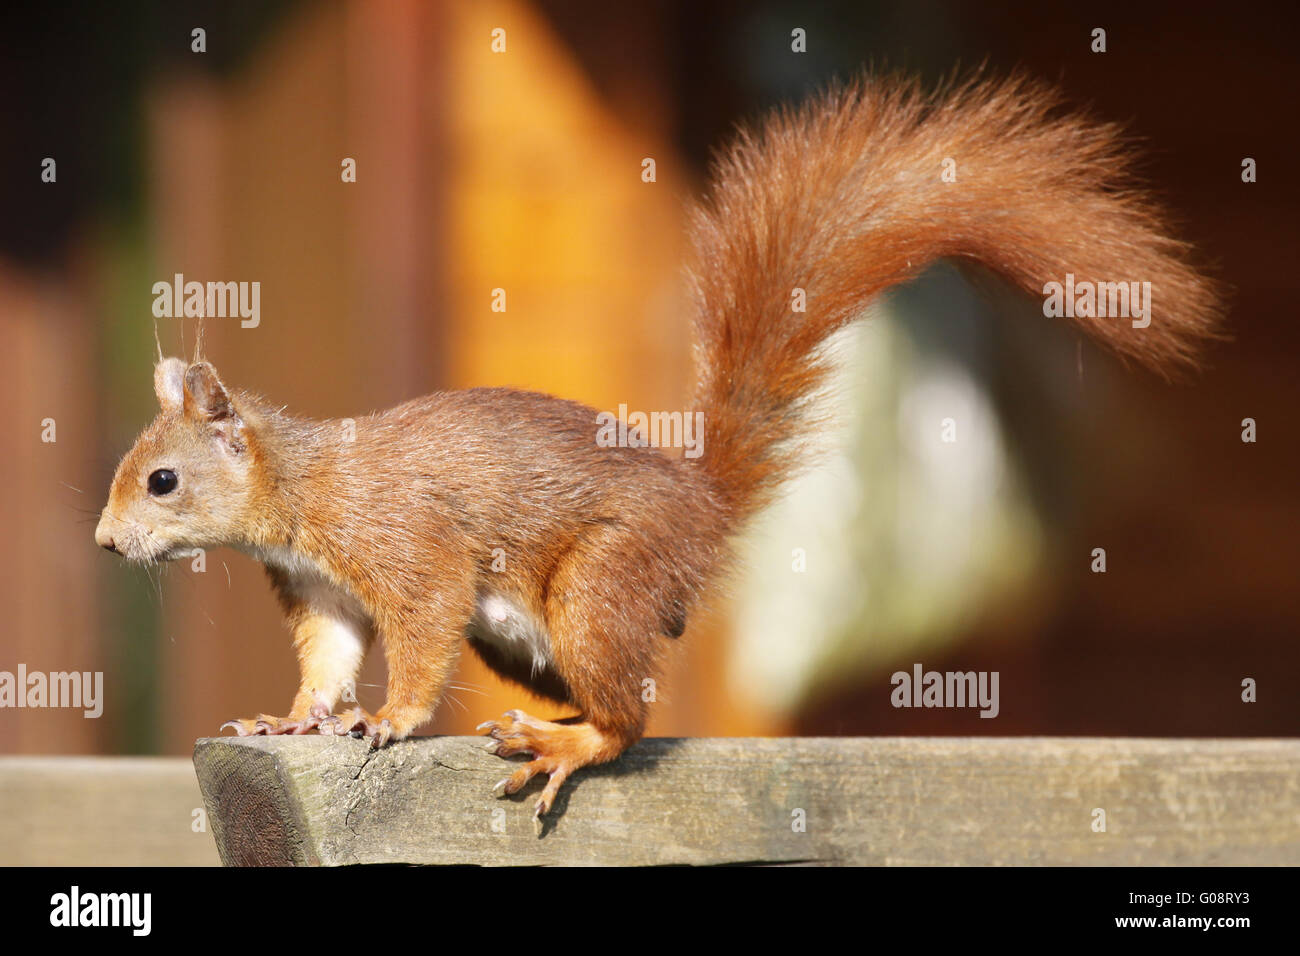 Alert Red squirrel / Sciurus vulgaris Stock Photo